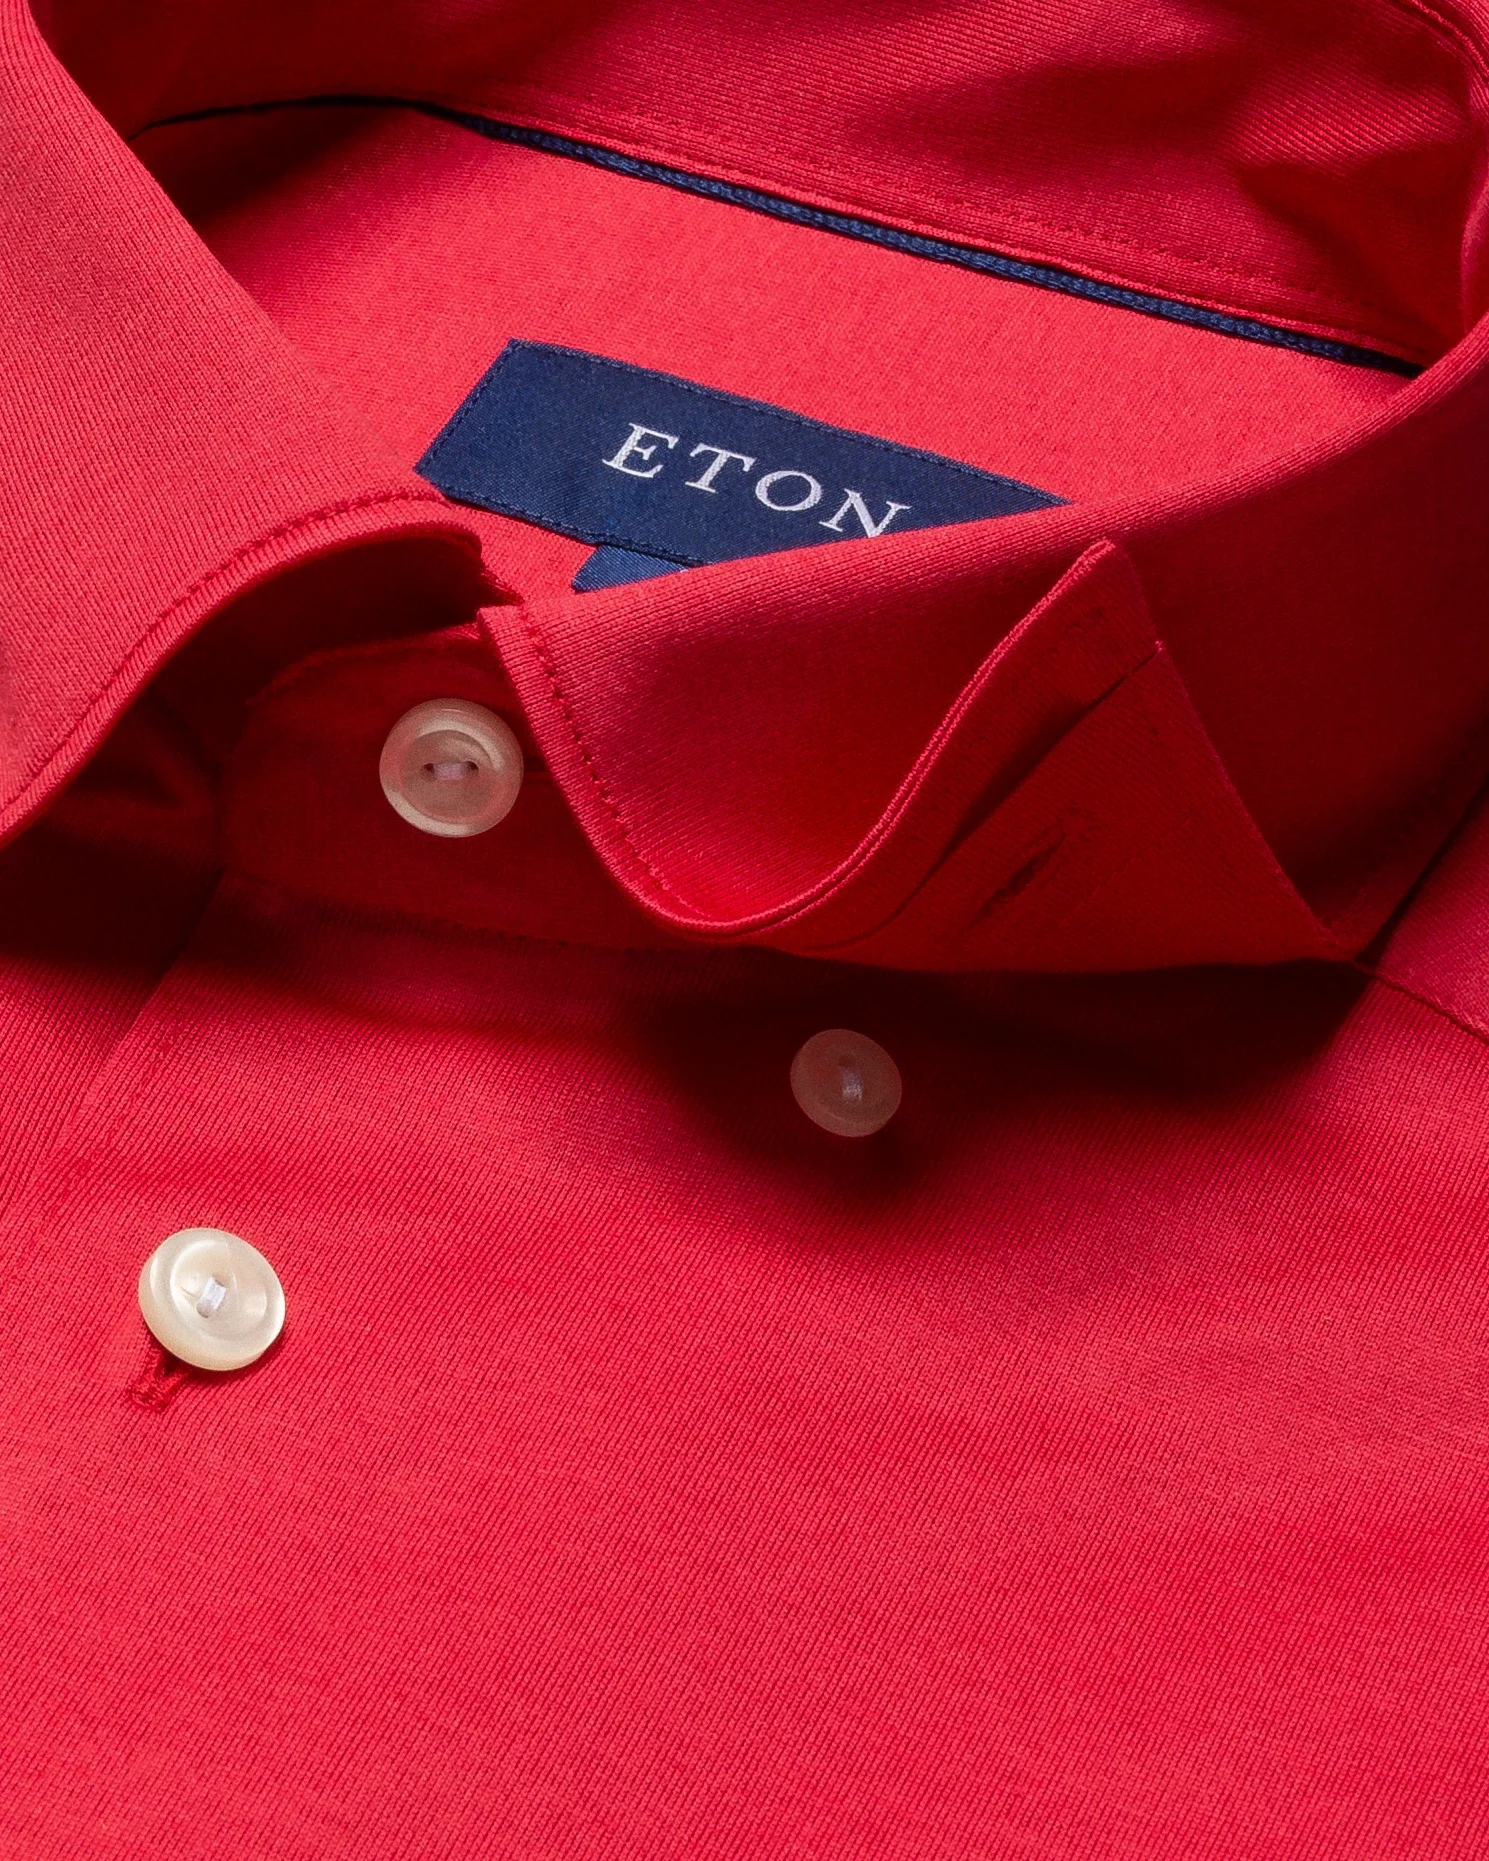 Eton - red jersey shirt